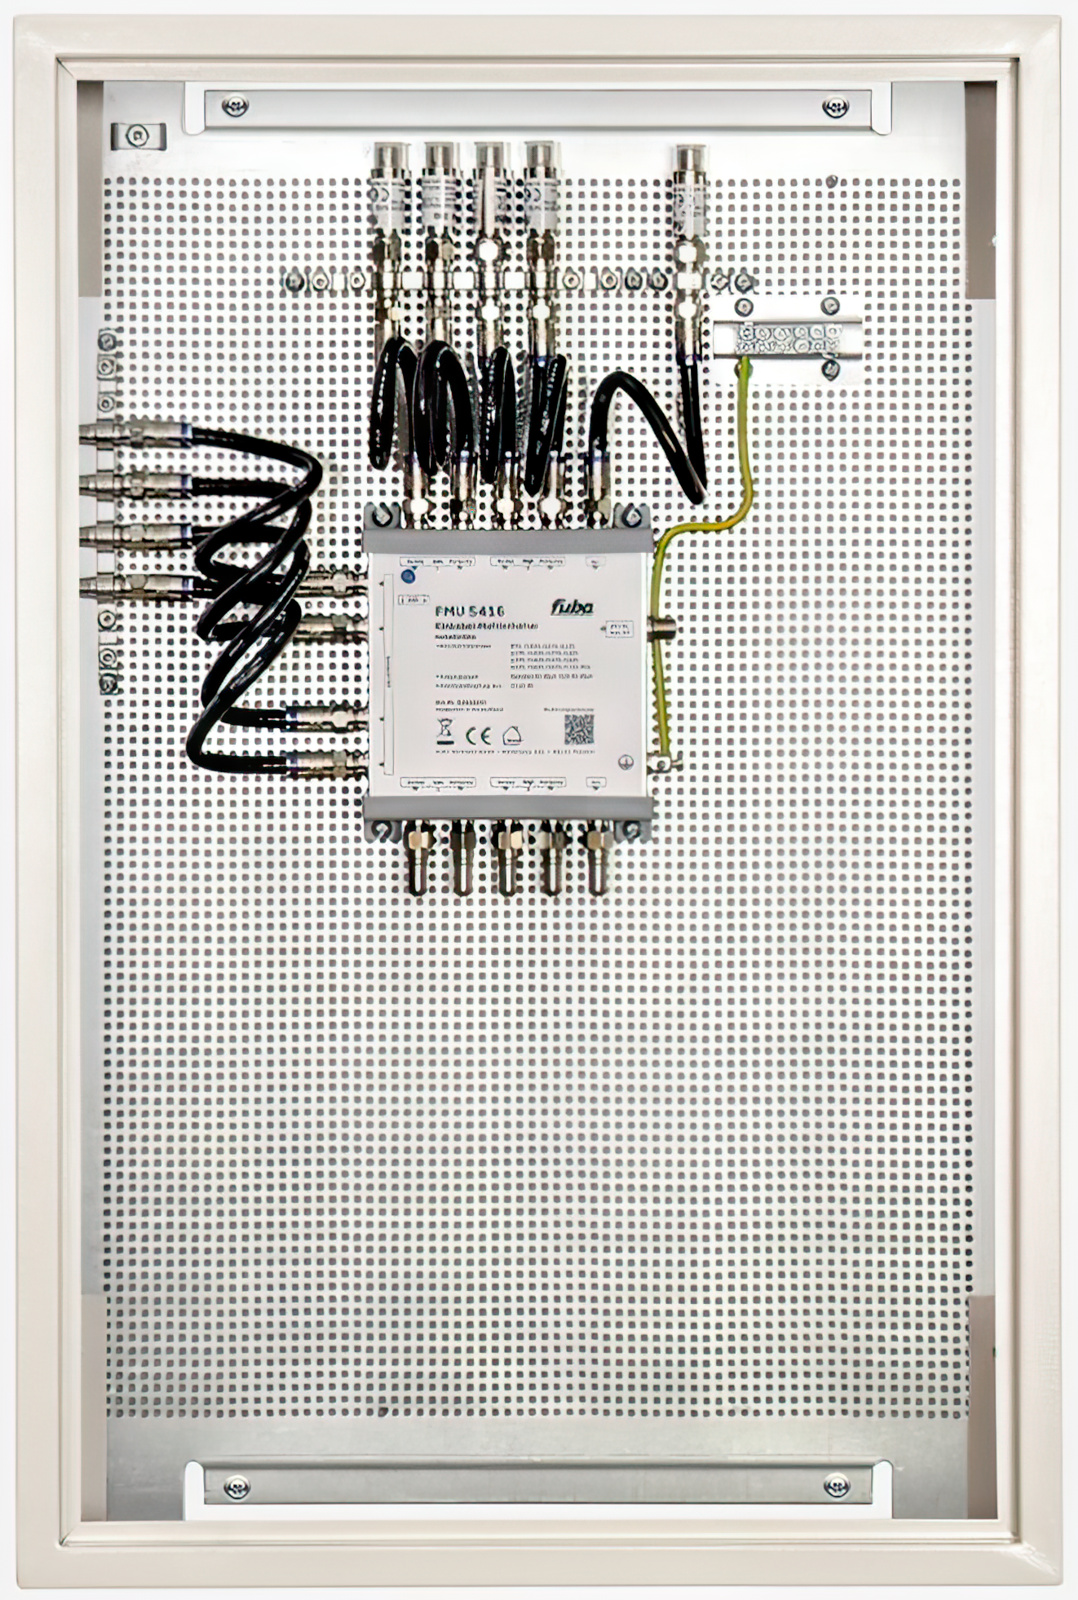 Fuba FEP 5416 SL Einkabel-Multischalterpanel vormontiertes Einkabel-Multischalter-Paneel für die Verteilung von Satellitensignalen und terrestrischen Signalen auf 4 Ausgänge mit je 16 Nutzerfrequenzen.